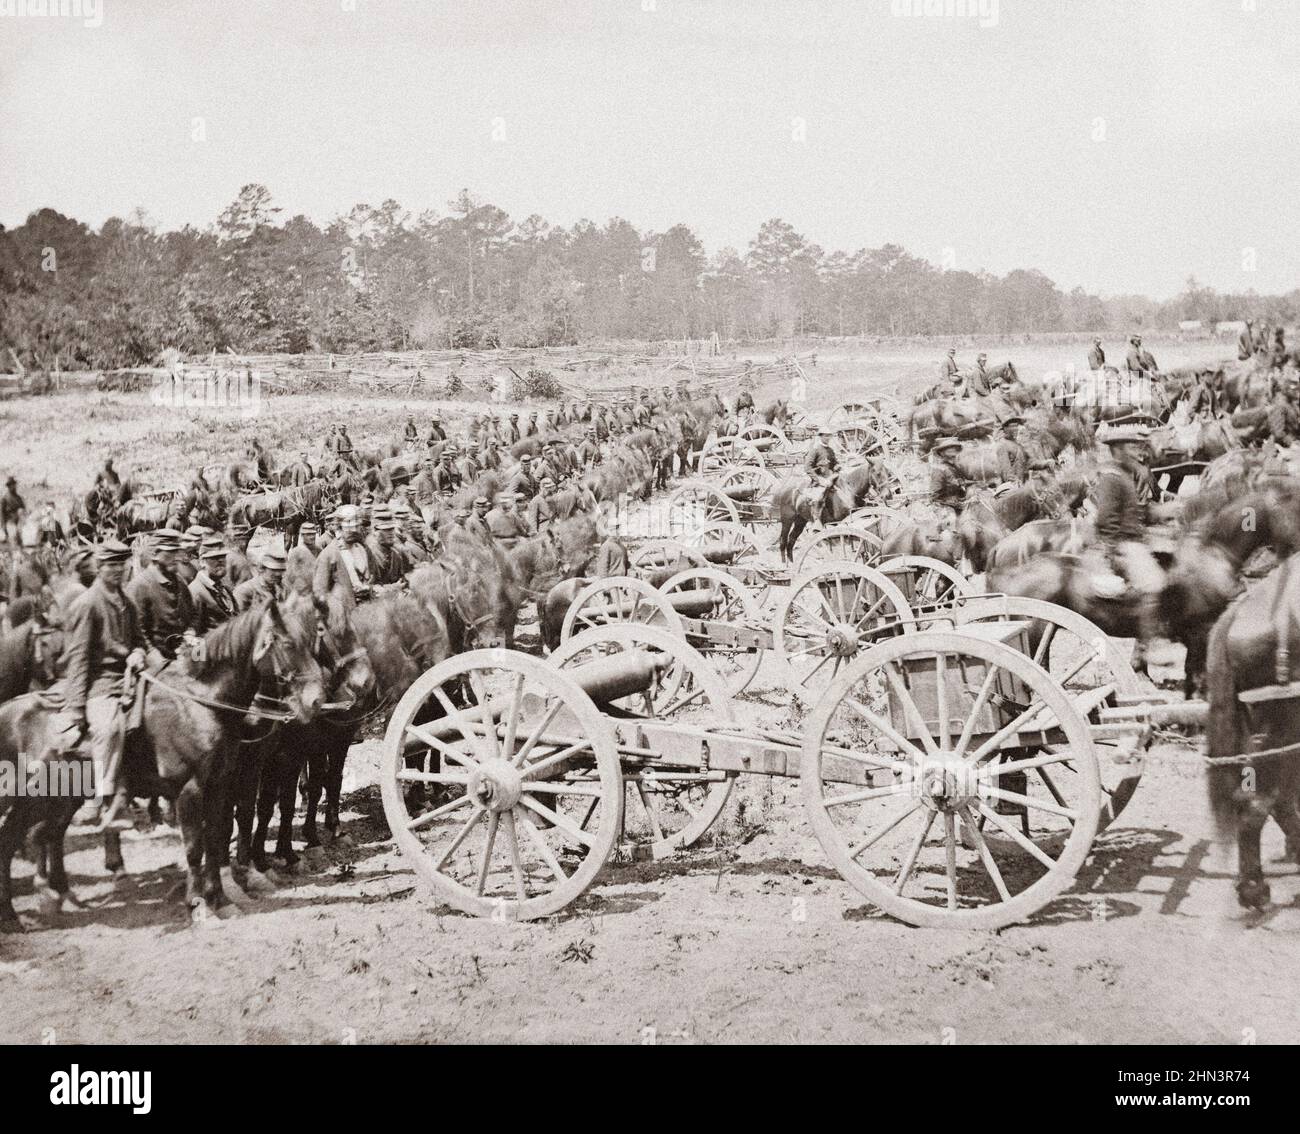 Période de la guerre de Sécession. Richmond, Virginie (environs). La batterie d'artillerie à cheval du major (JM) Robertson. ÉTATS-UNIS. Juin 1862 Banque D'Images